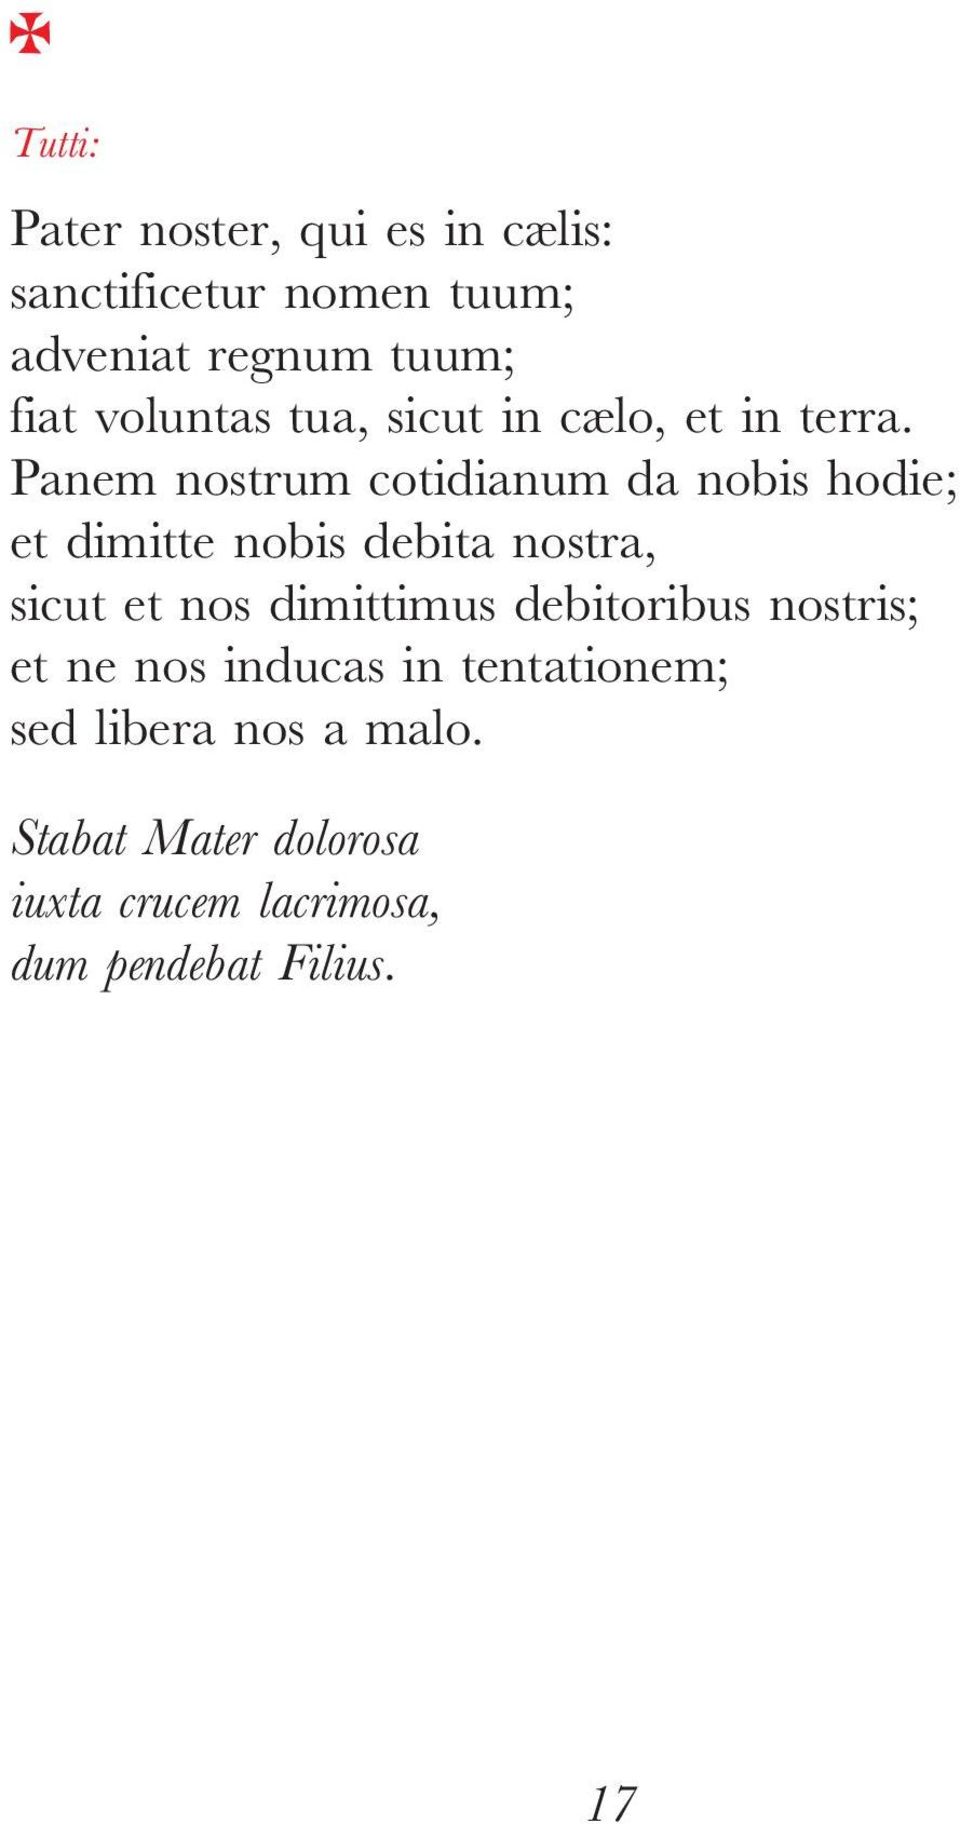 Panem nostrum cotidianum da nobis hodie; et dimitte nobis debitanostra, sicut et nos